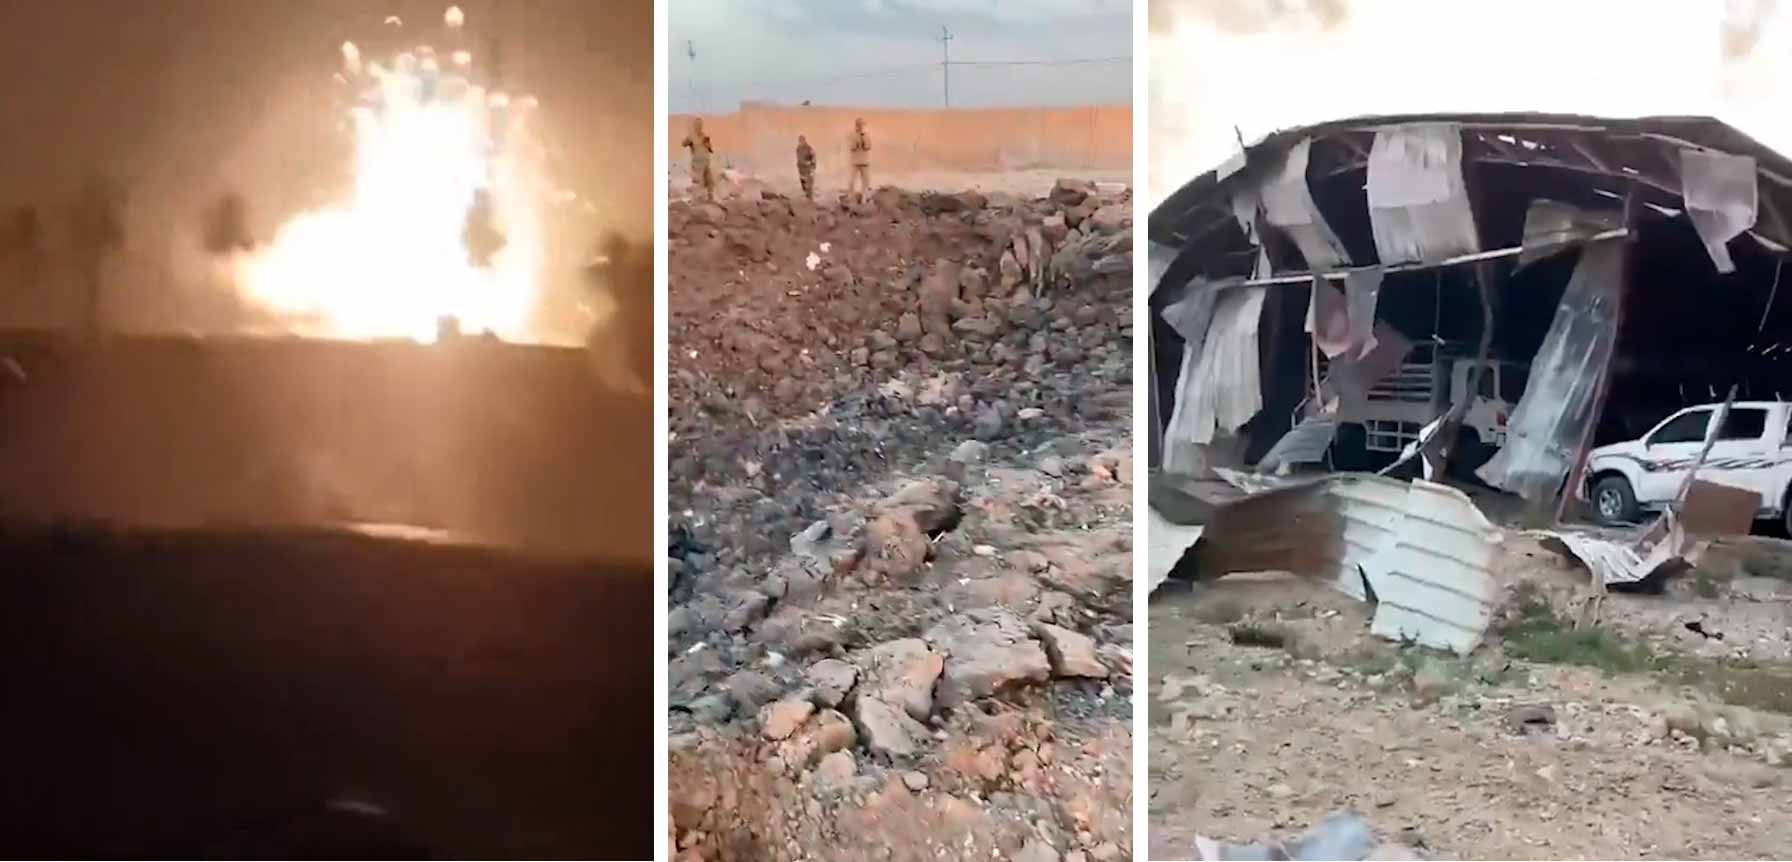 Vídeo: Ataques Aéreos Causam Devastação em Base das Forças de Mobilização Popular no Iraque. Foto e vídeo: Twitter @visegrad24
